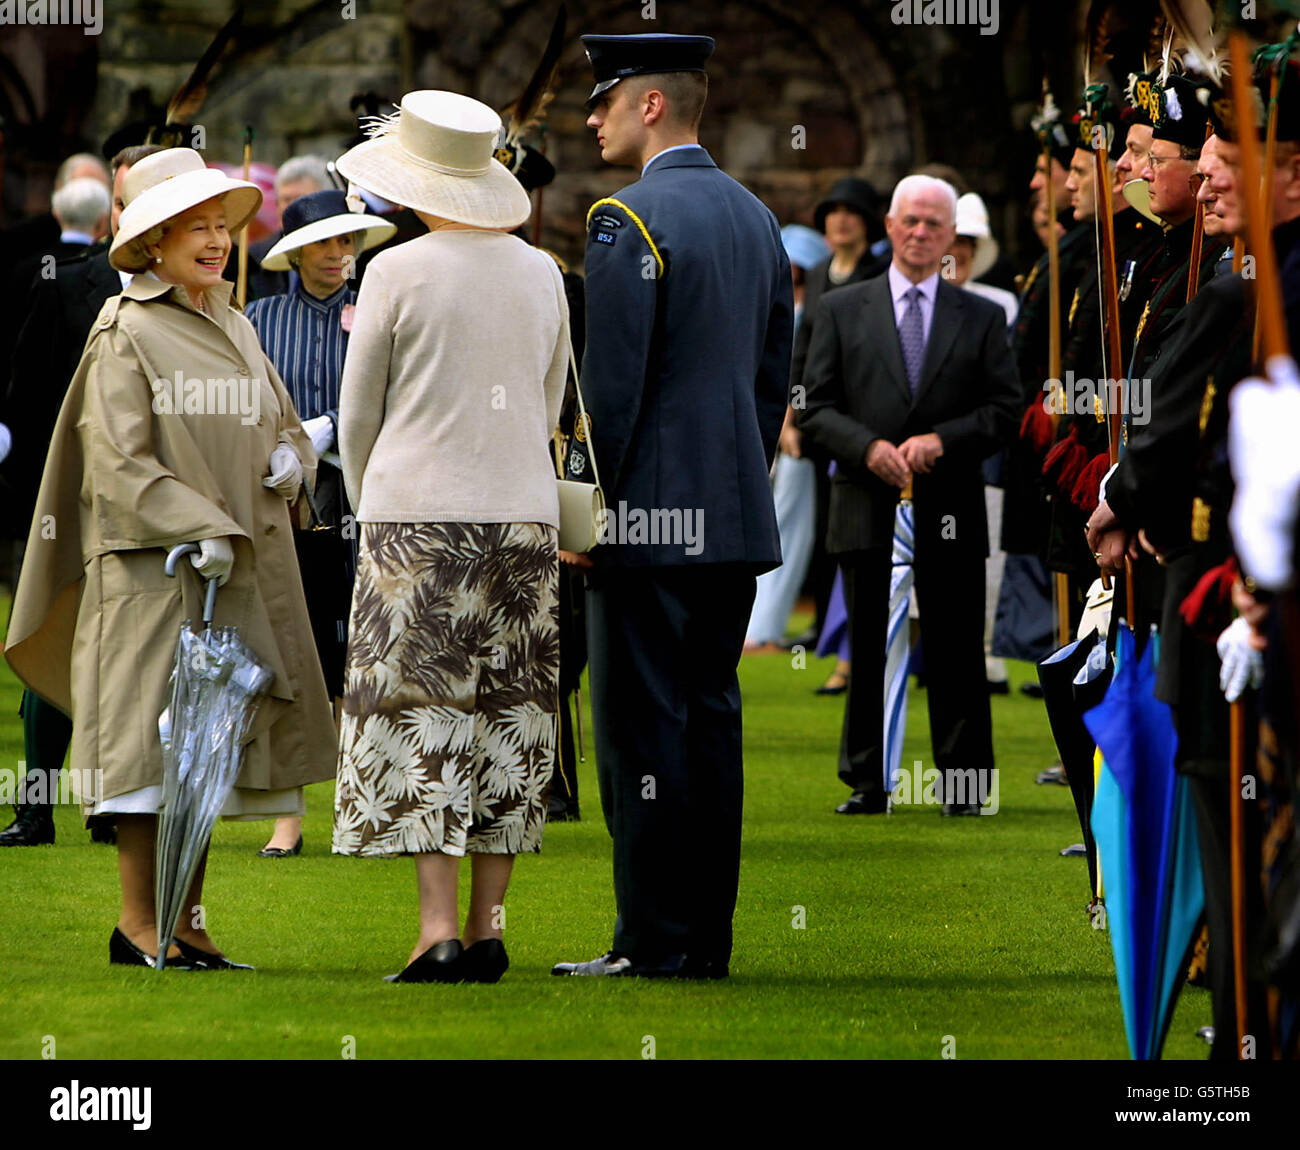 Die britische Königin Elizabeth II lächelt während der Royal Garden Party im Holyrood Palace in Edinburgh. Die Königin ist am dritten Tag ihrer goldenen Jubiläumstour durch Schottland. Stockfoto